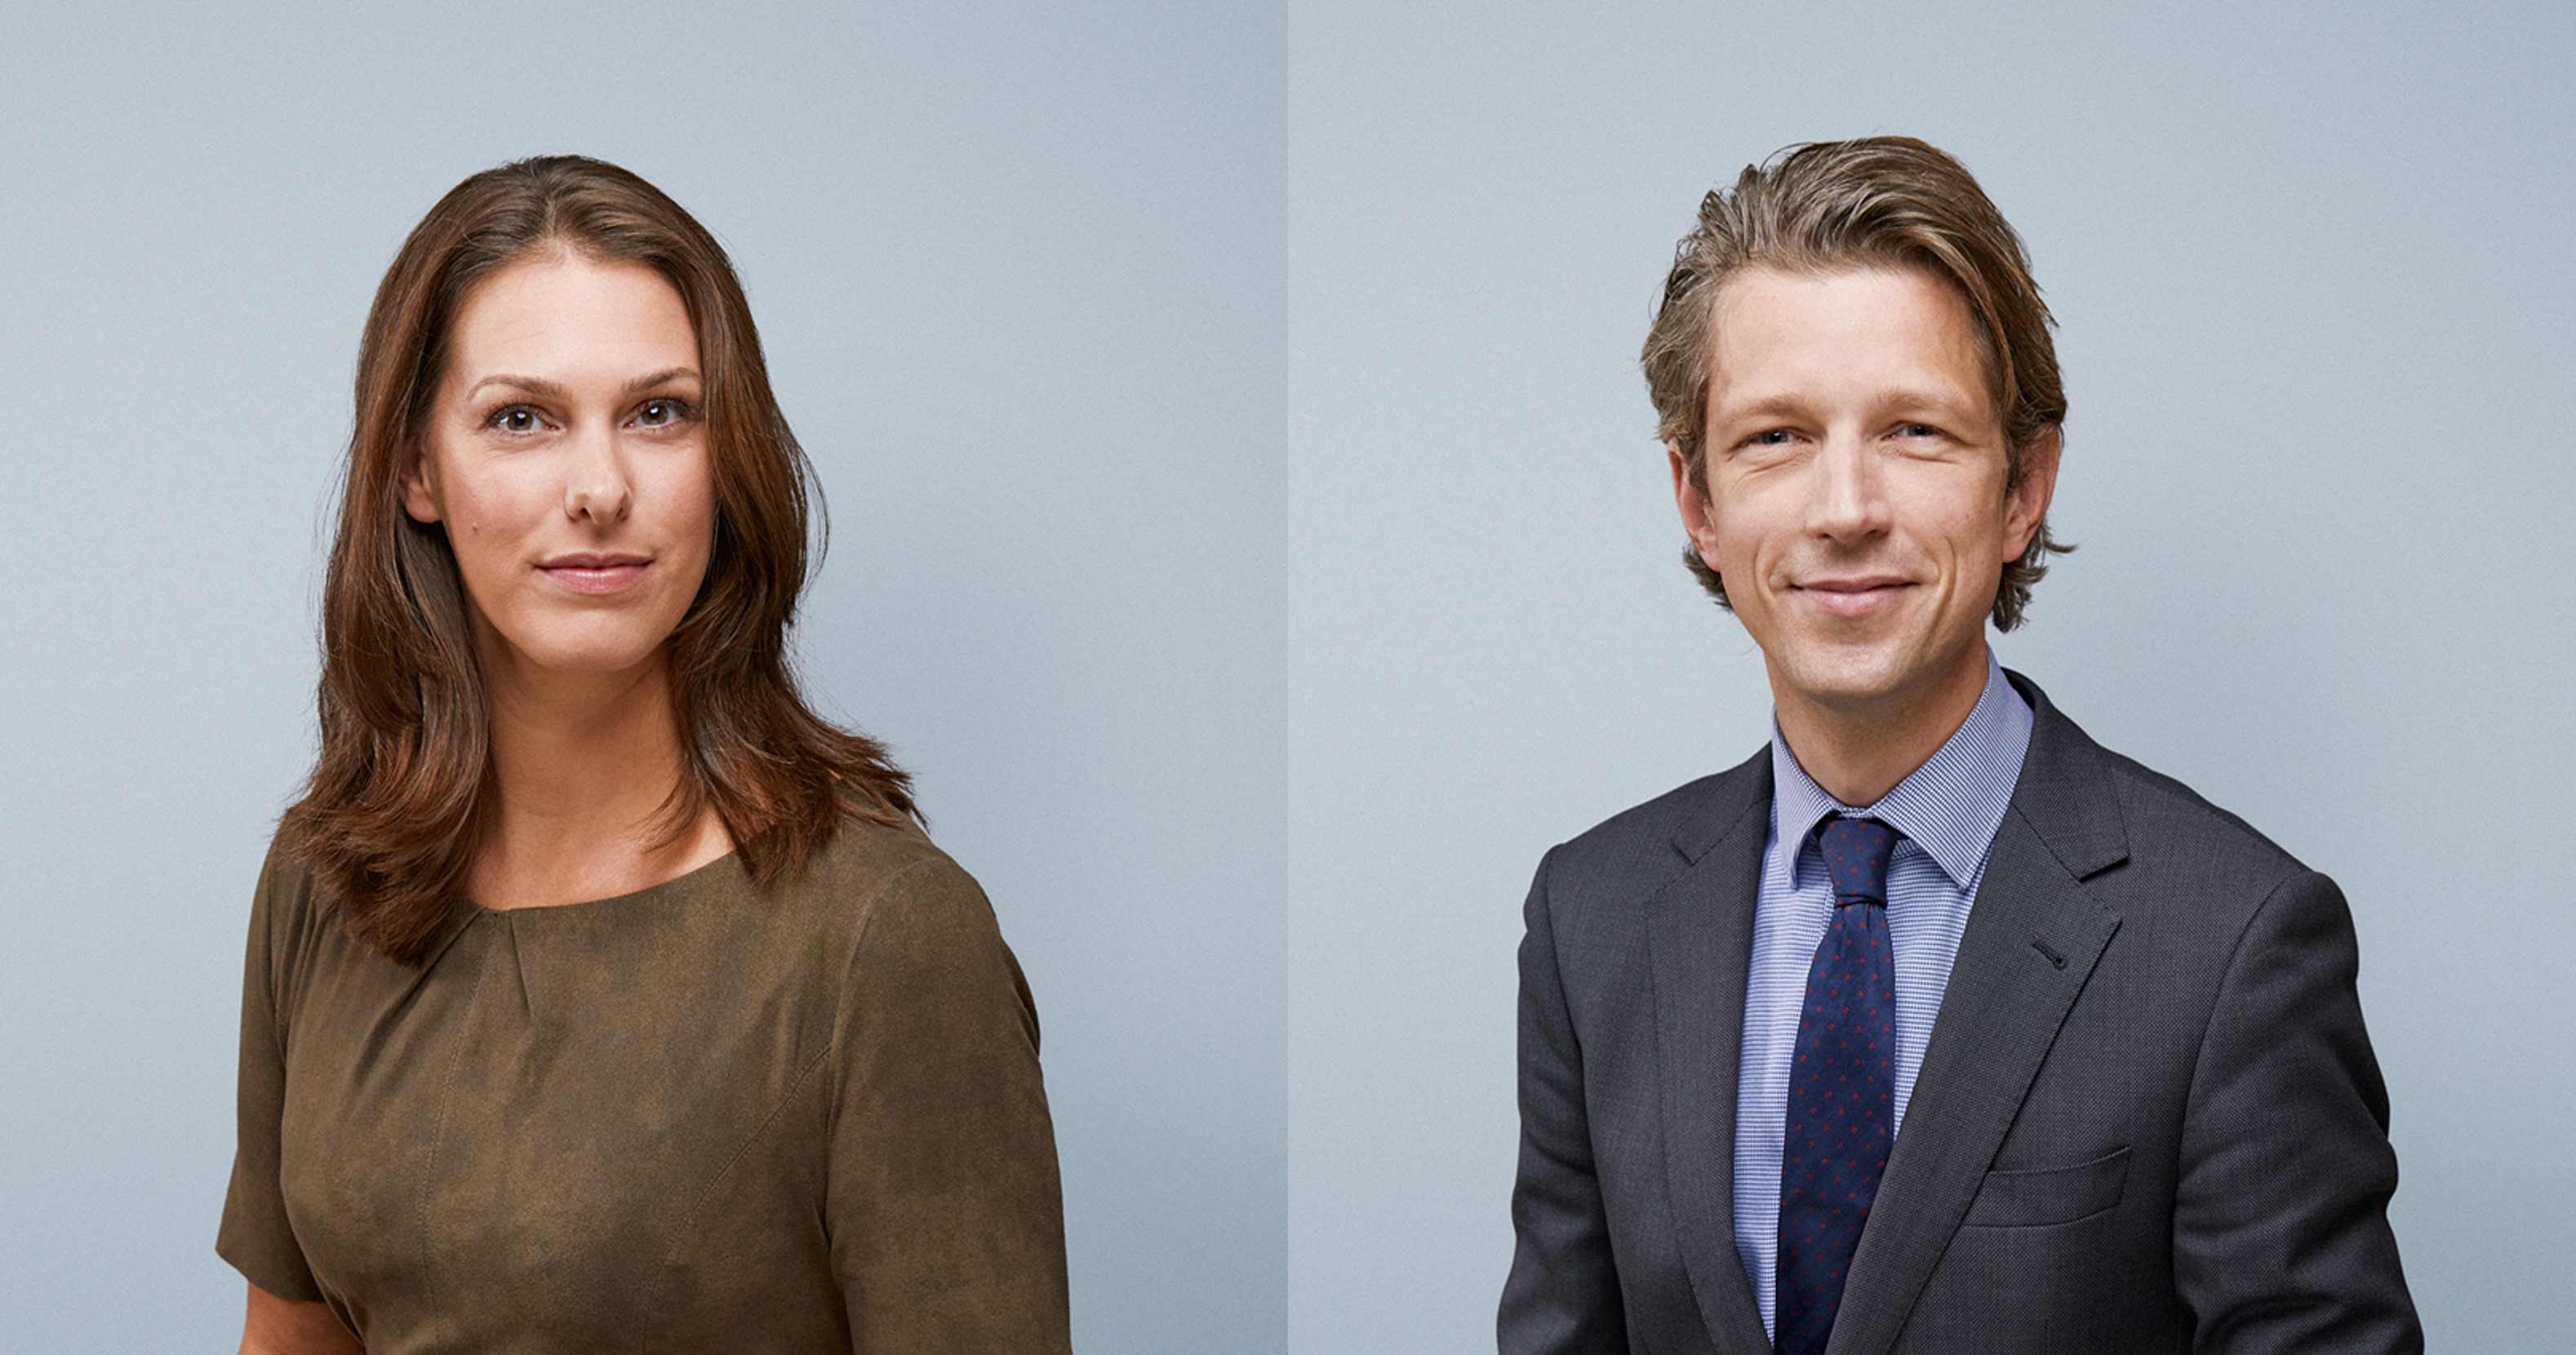 Mariska Nijenhof-Wolters en Martijn van Steensel appointed equity partner with effect from 1 January 2022